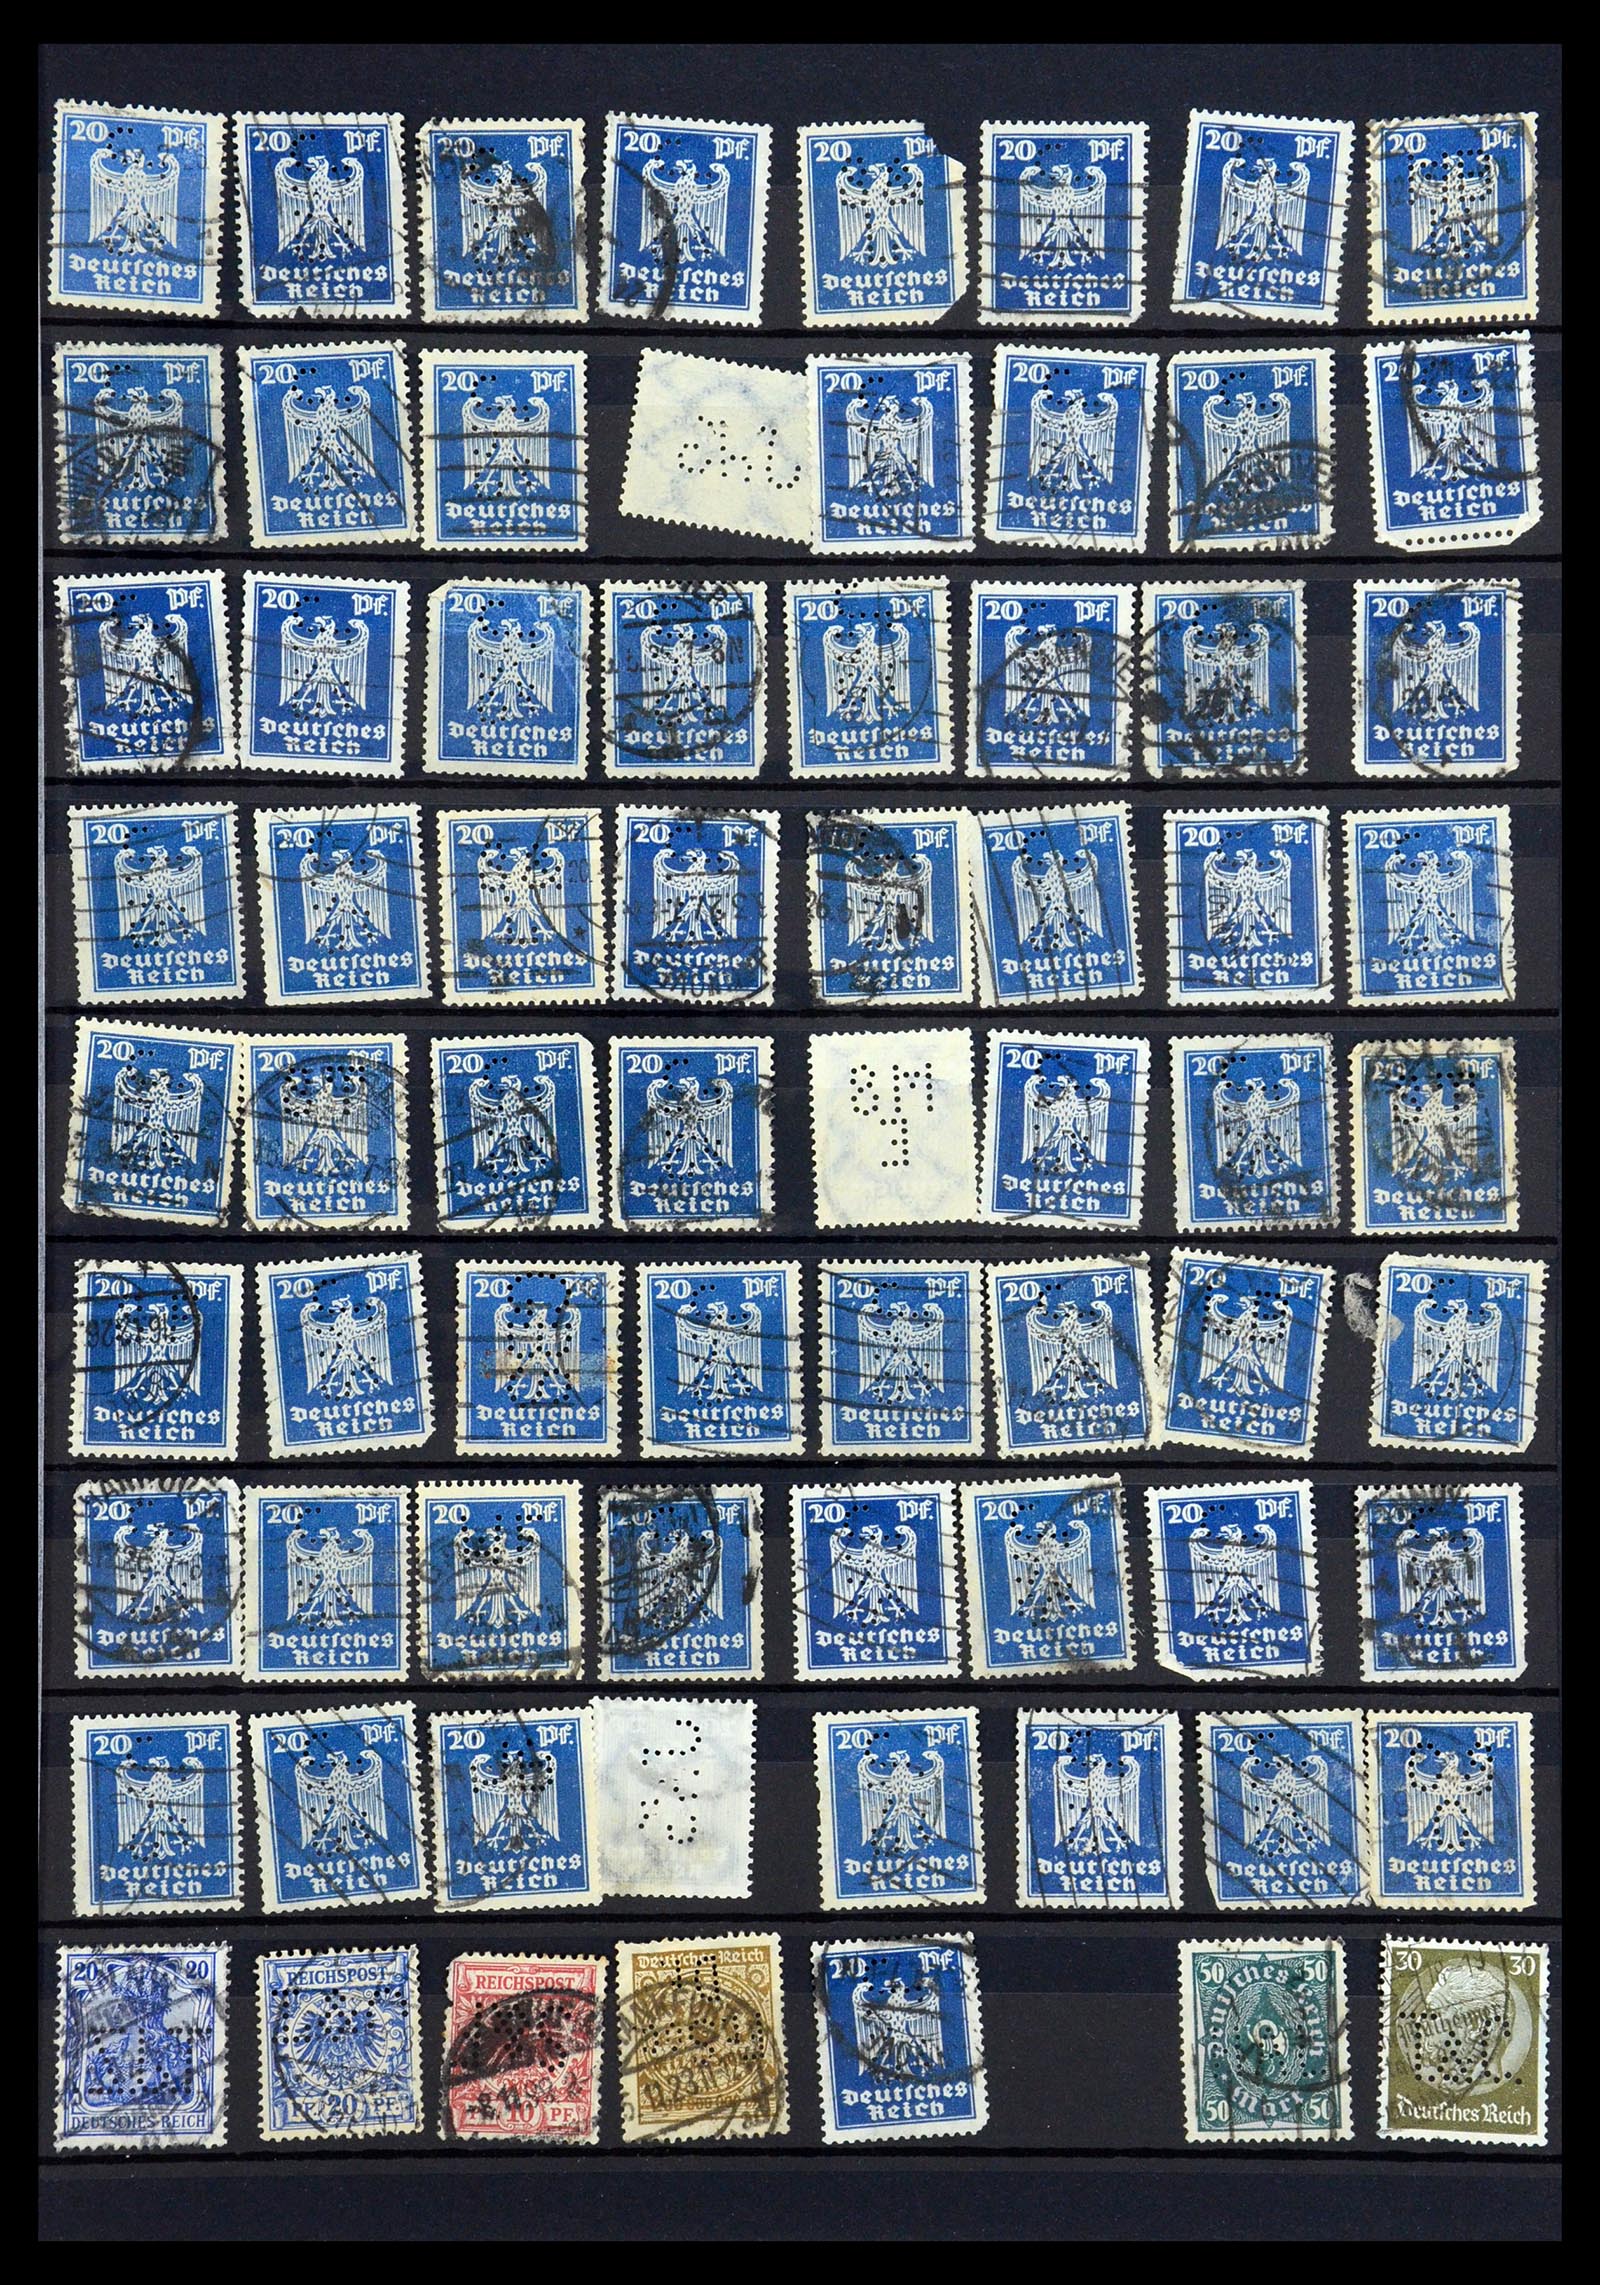 35183 041 - Stamp Collection 35183 German Reich perfins 1880-1945.